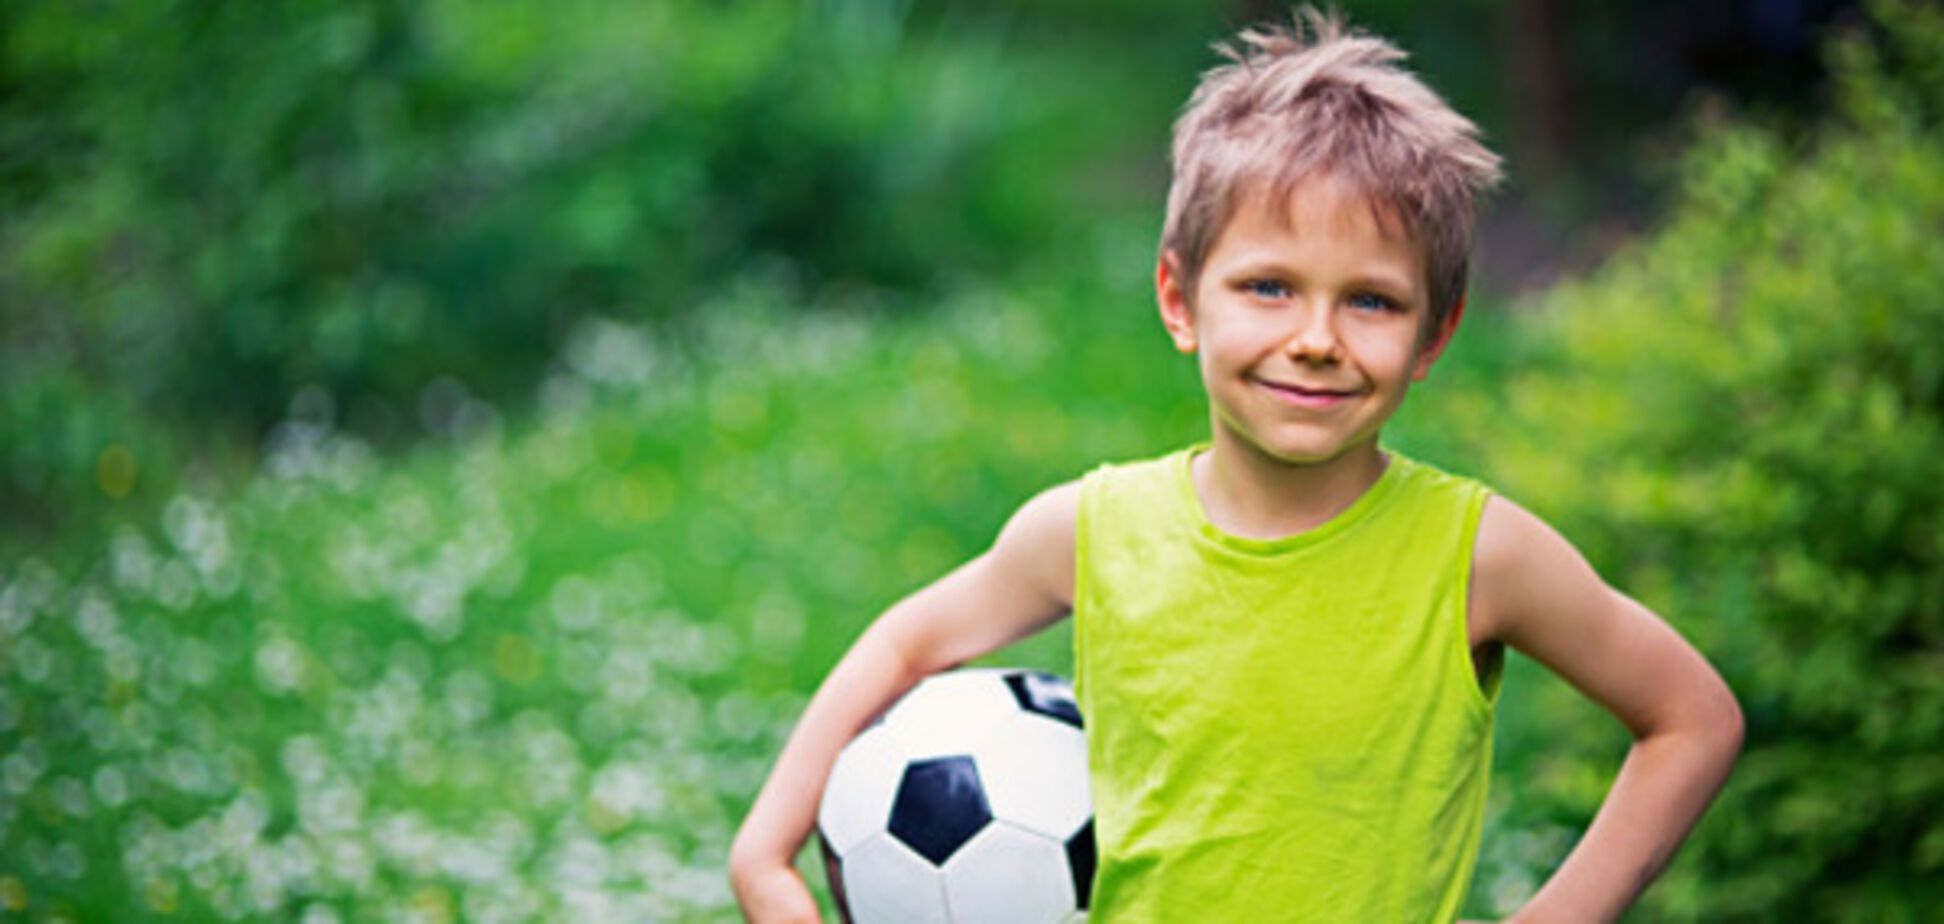 Вчені з'ясували, чи може гра в футбол стати причиною травми мозку у дитини